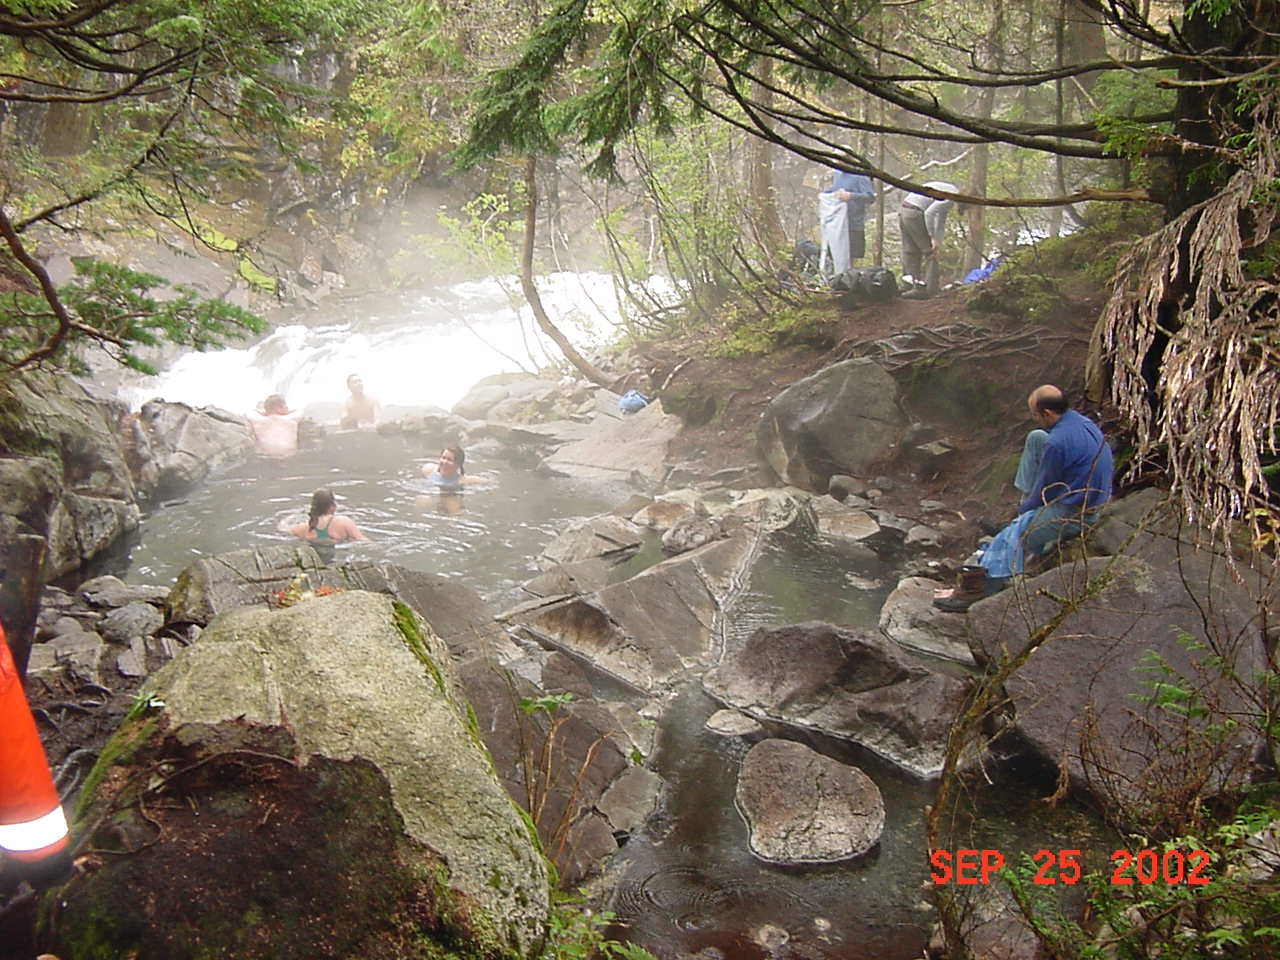 Enjoying the hot springs at Hot Springs Bay